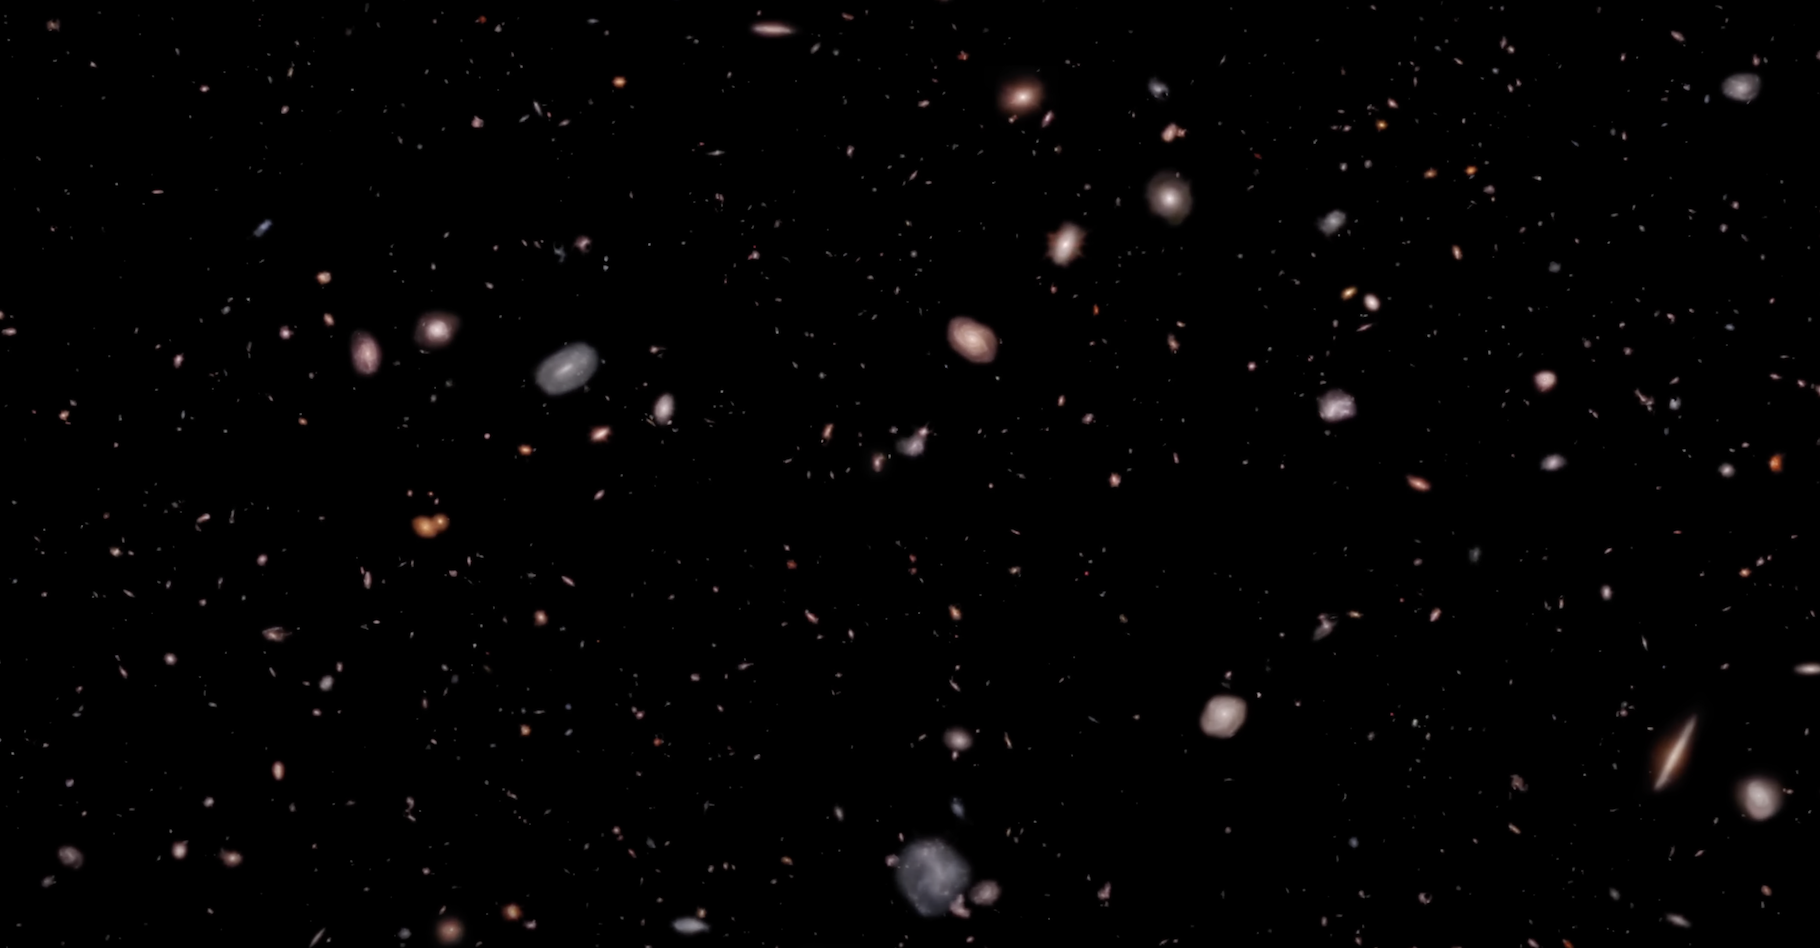 Les équipes du télescope spatial James-Webb ont mis en vidéo 3D quelque 5 000 galaxies observées par l’instrument. Prêts pour un voyage merveilleux jusqu’aux confins de notre Univers ? © Frank Summers, Greg Bacon, Joseph DePasquale, Leah Hustak, Joseph Olmsted, Alyssa Pagan, STScI